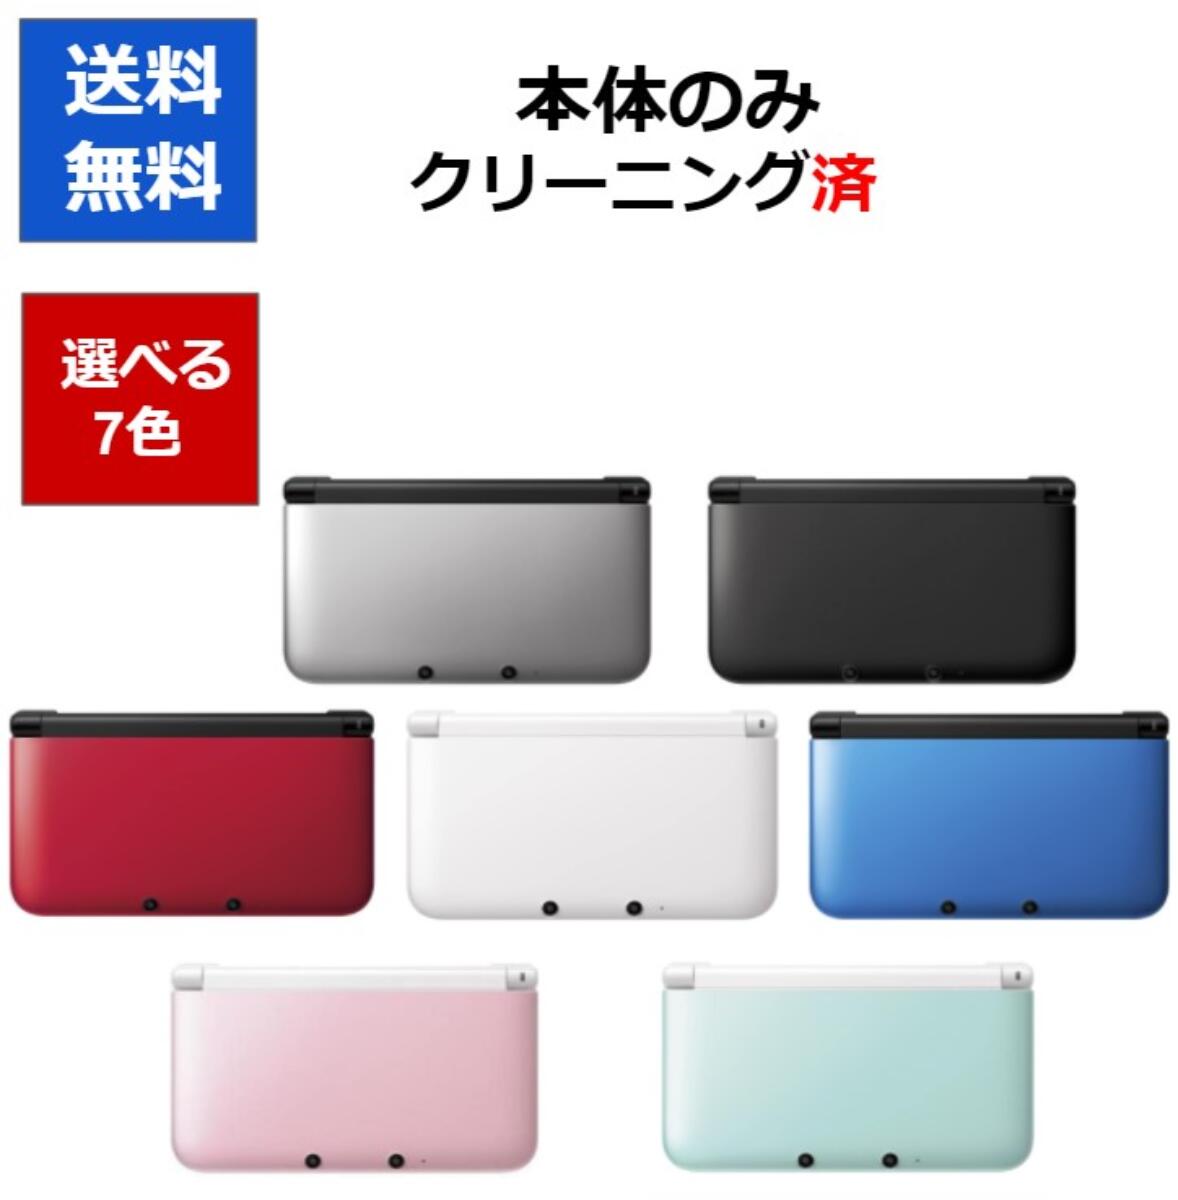 【ソフトプレゼント企画！】3DS LL ニンテンドーDS 本体 本体のみ 選べる7色 任天堂 中古【中古】【ソフトプレゼント…